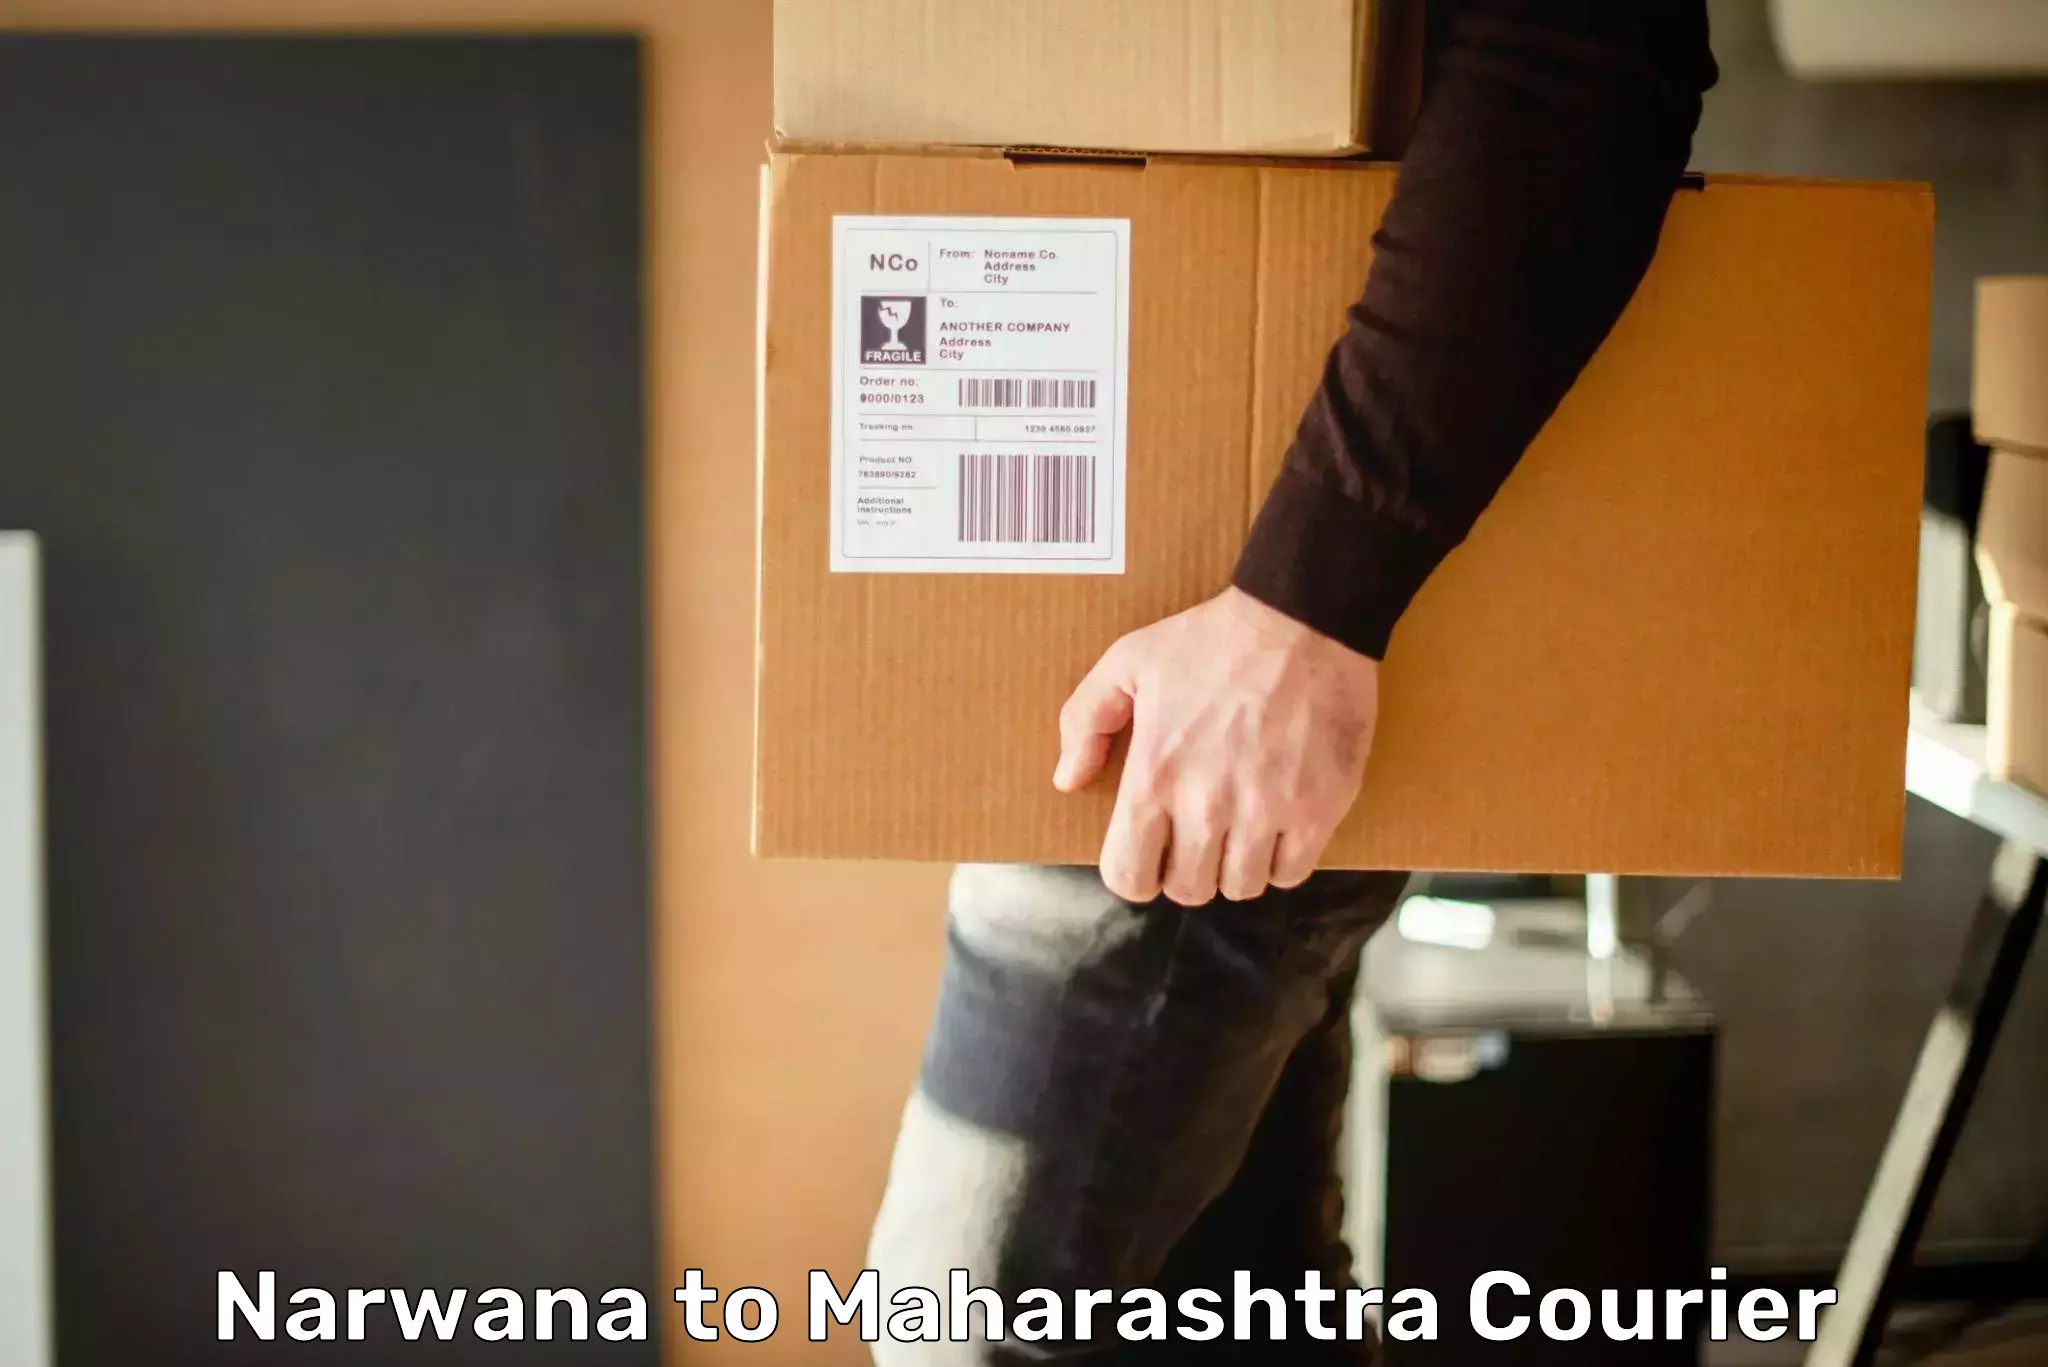 Next-day freight services Narwana to Maharashtra